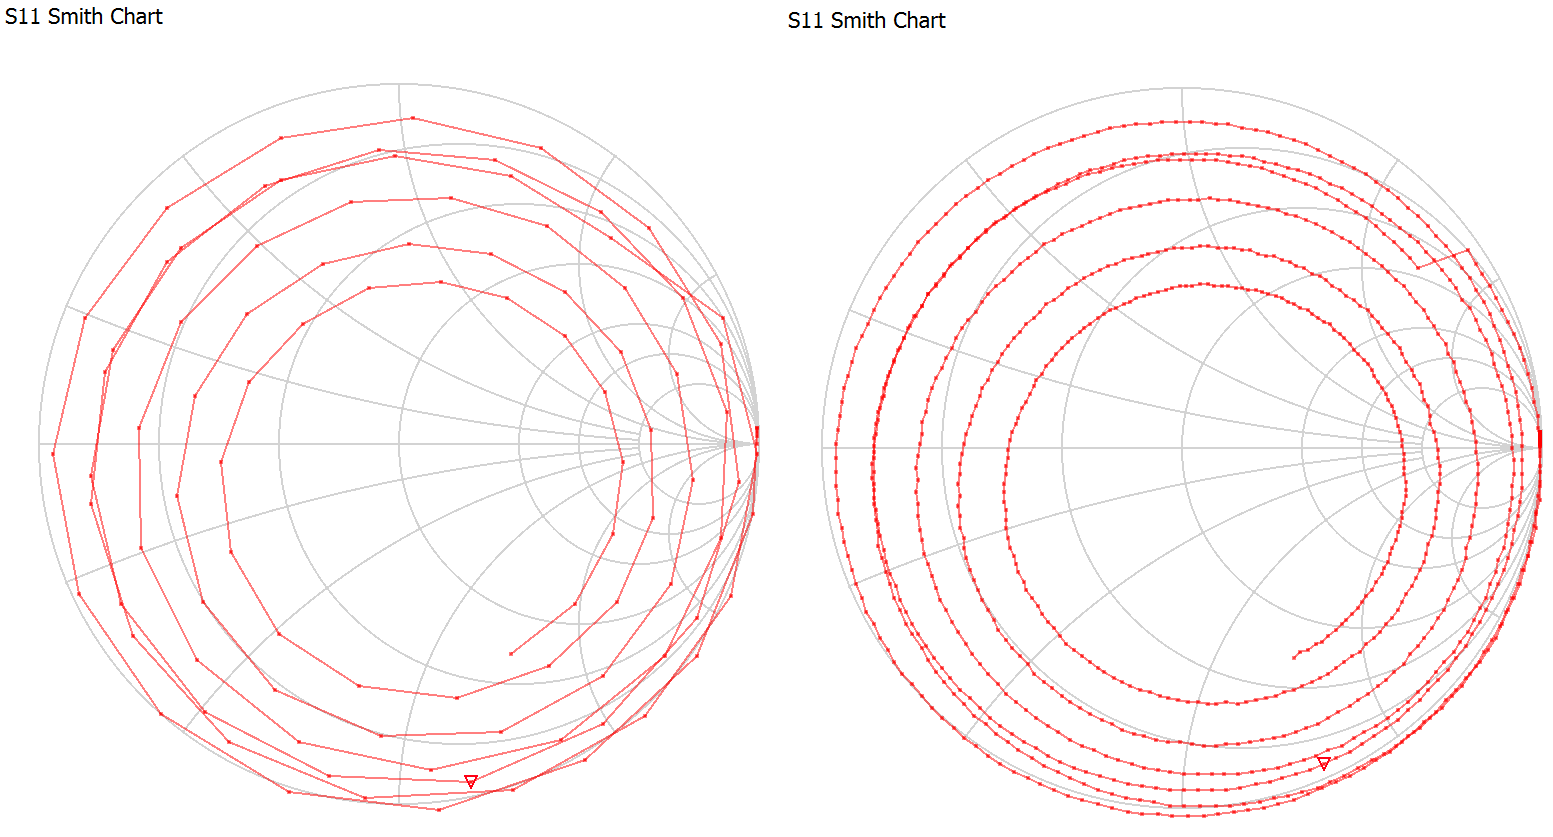 1segment vs 10 segments